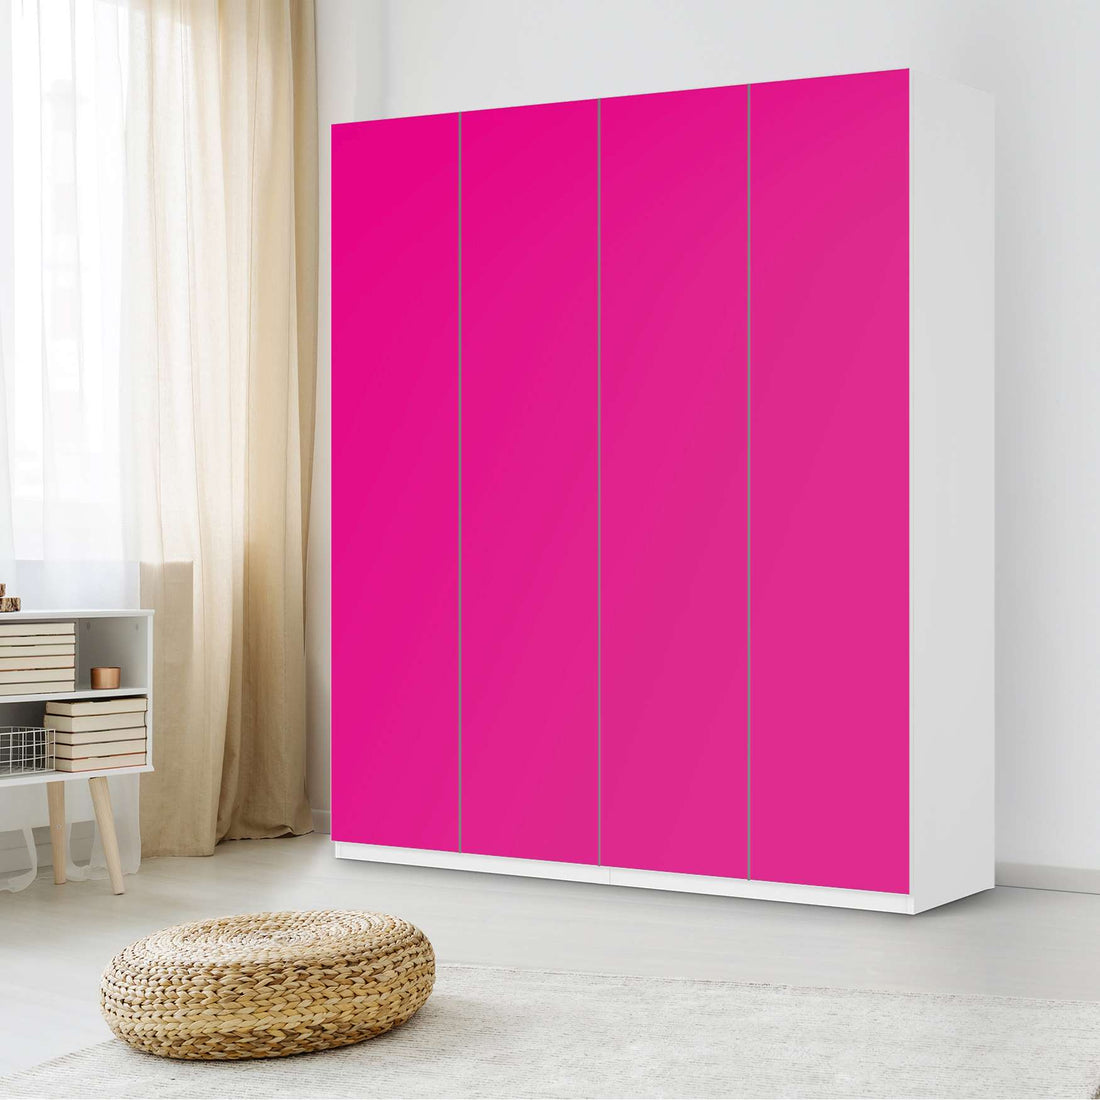 Möbelfolie Pink Dark - IKEA Pax Schrank 236 cm Höhe - 4 Türen - Schlafzimmer